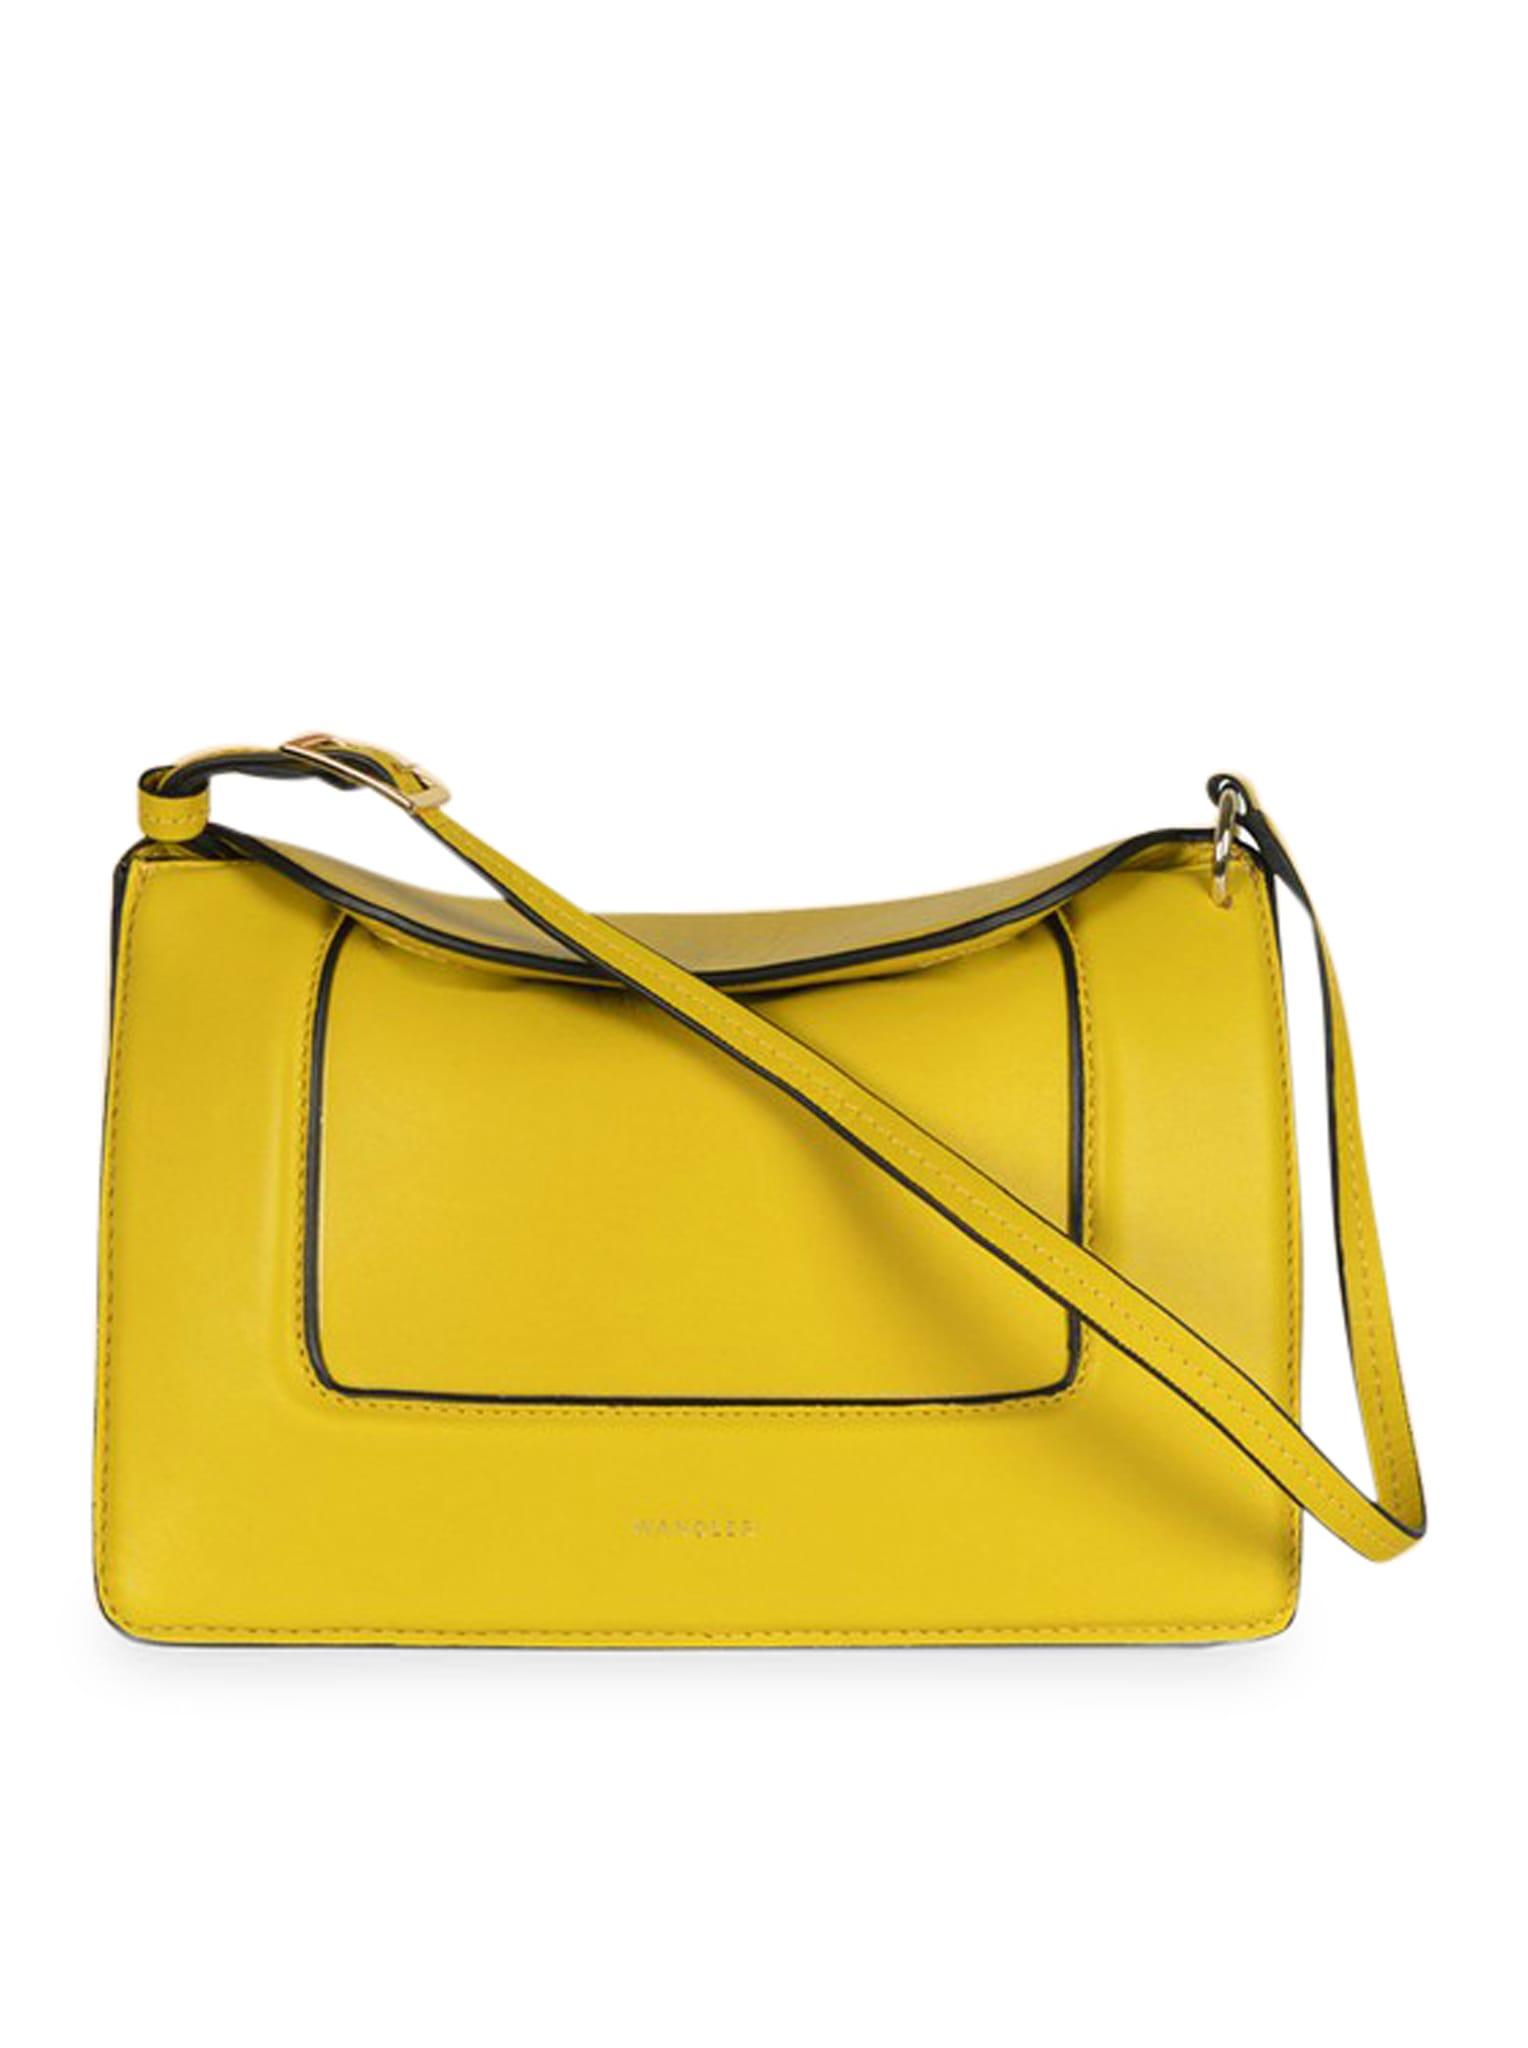 Wandler Penelope Micro Bag in Yellow | Lyst